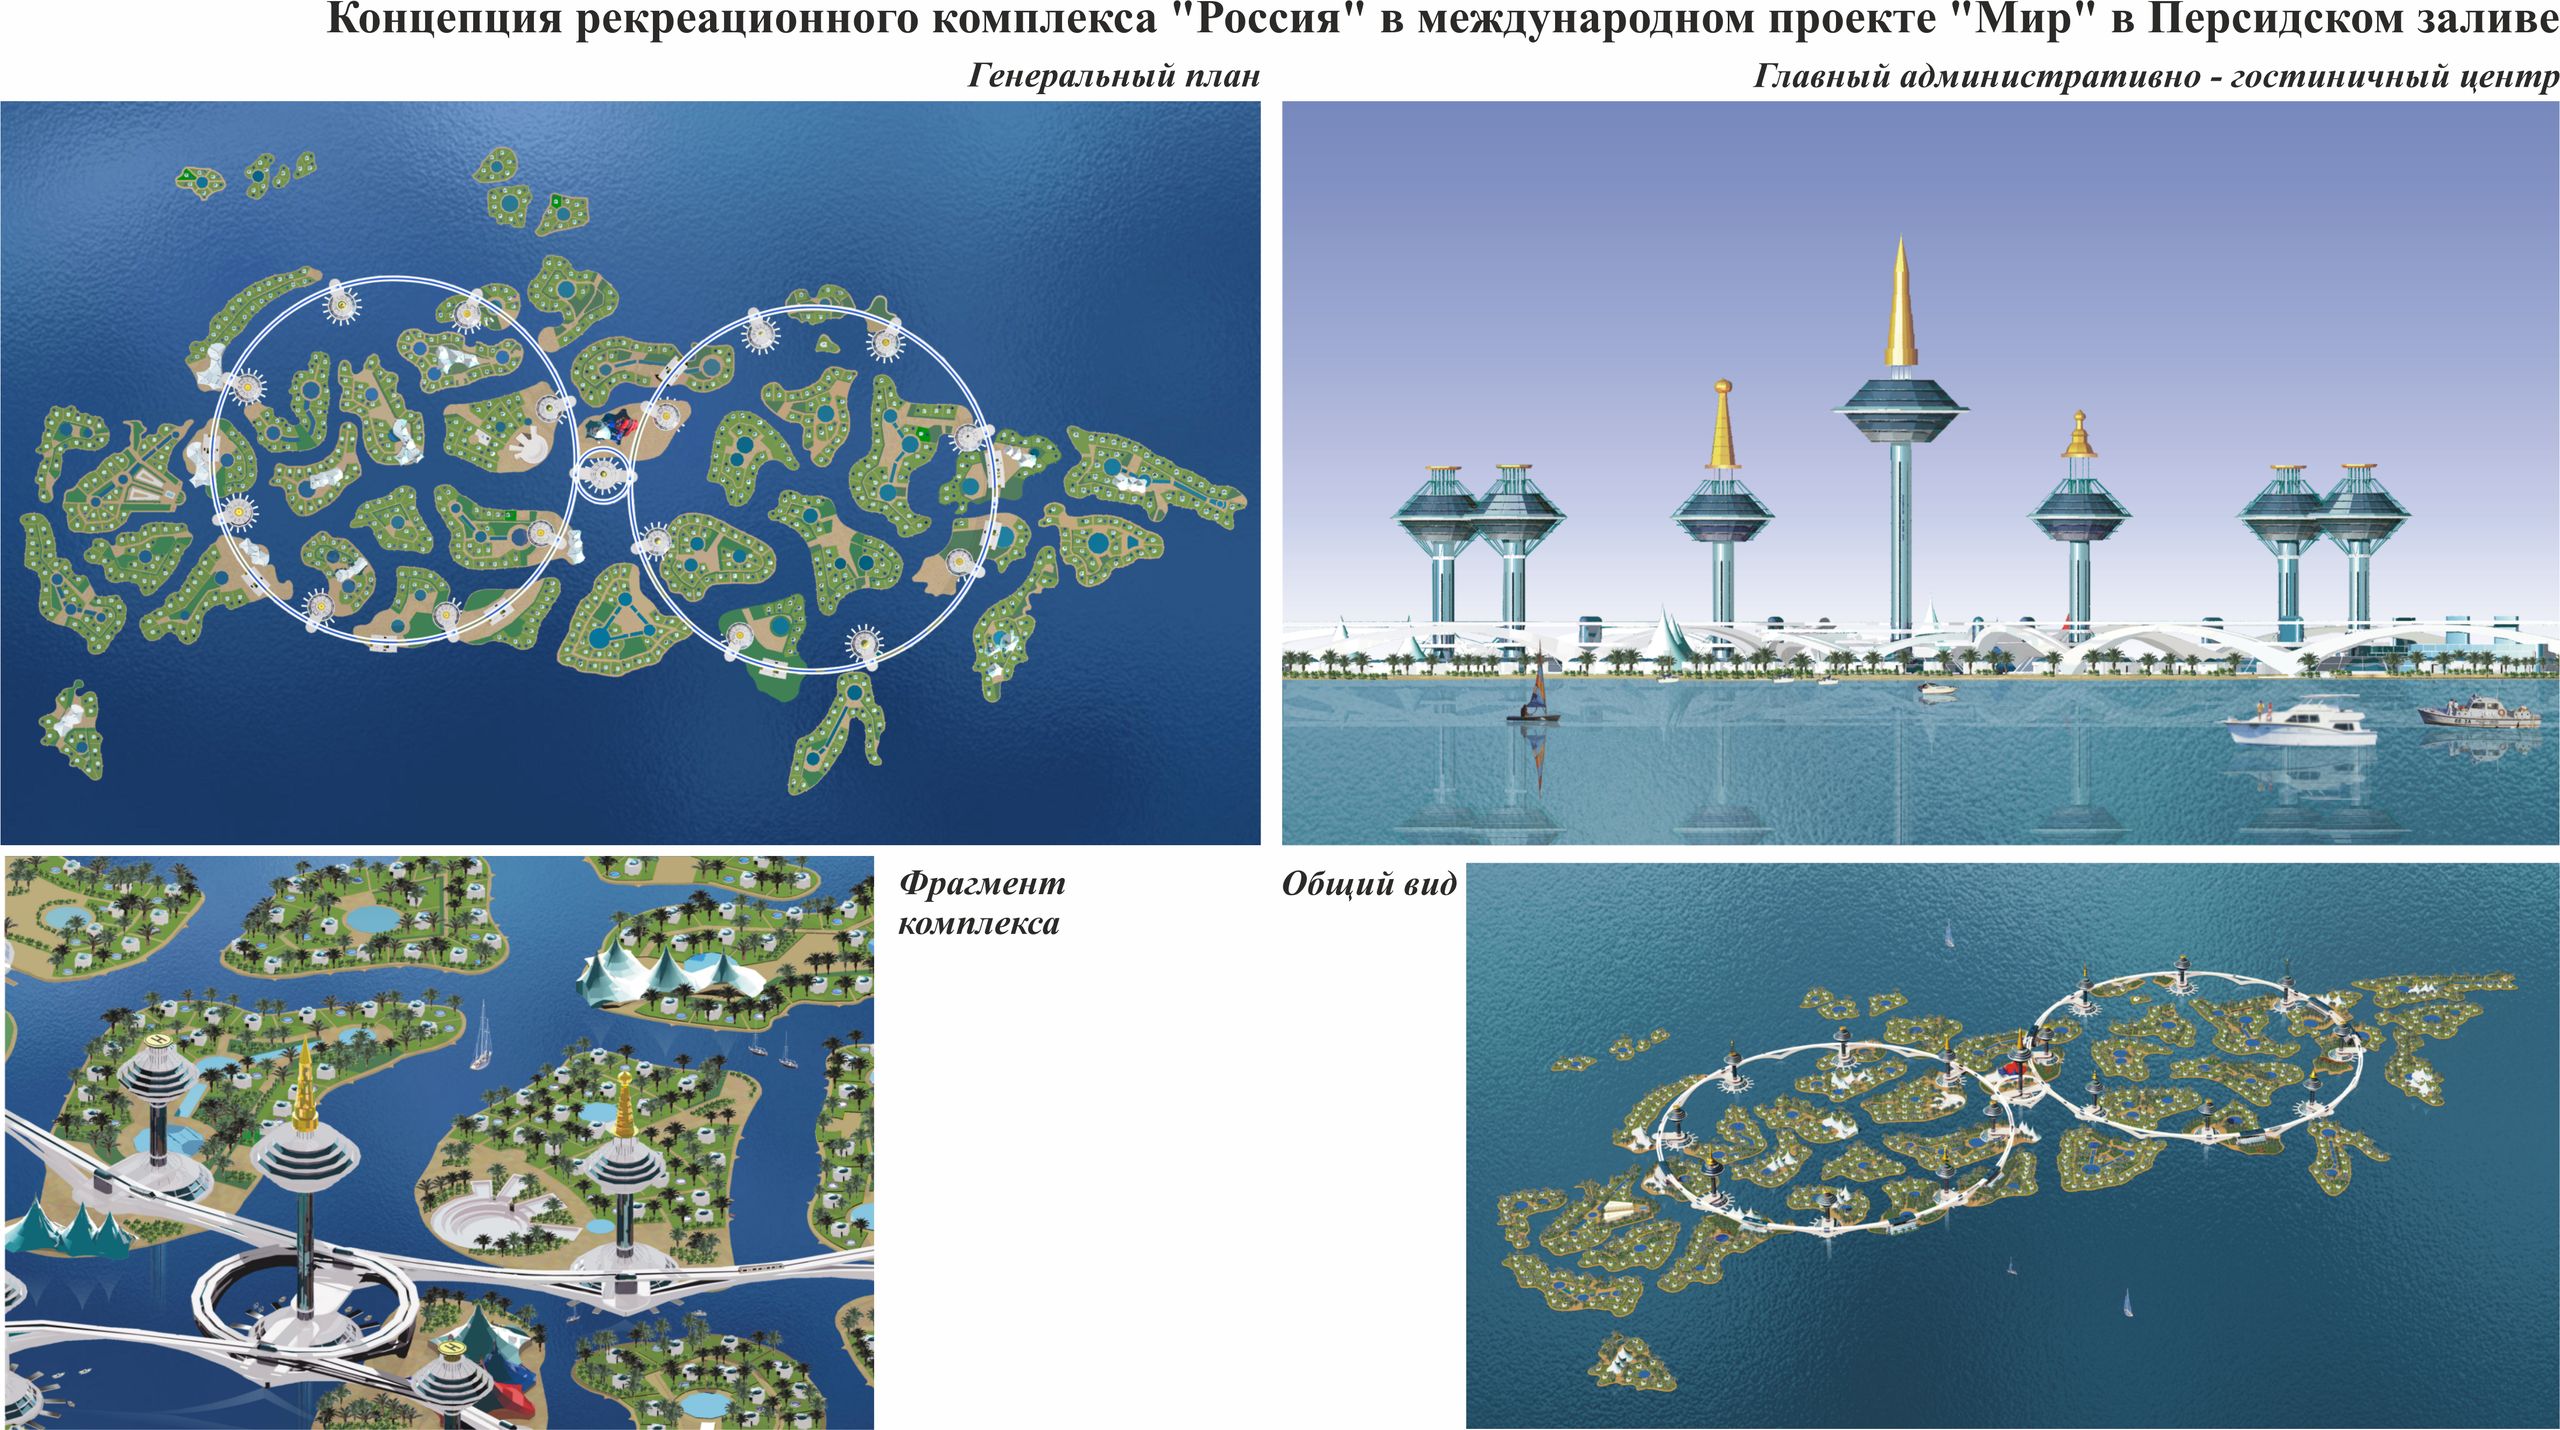 Концепция рекреационного комплекса «Россия» в международном проекте «Мир» в Персидском заливе